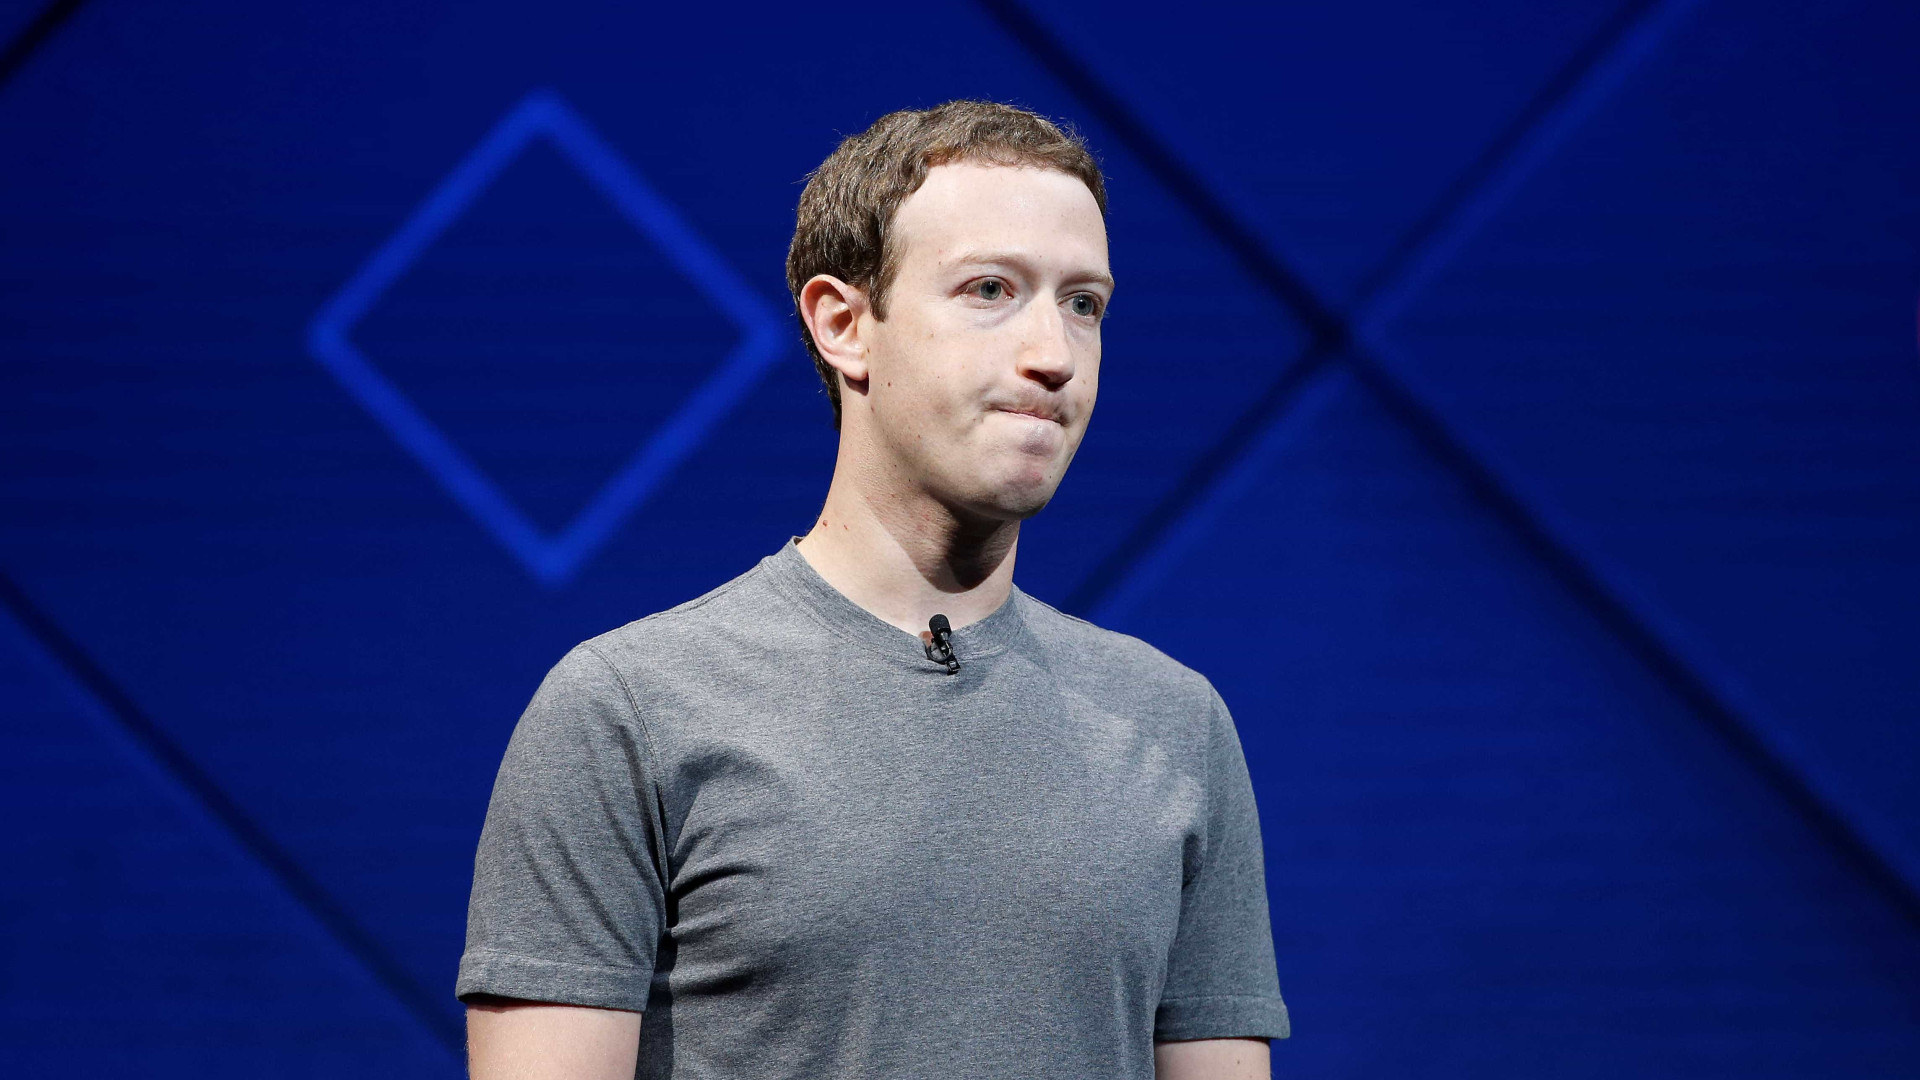 Estudo prevê que 2 milhões de jovens nos EUA vão deixar Facebook